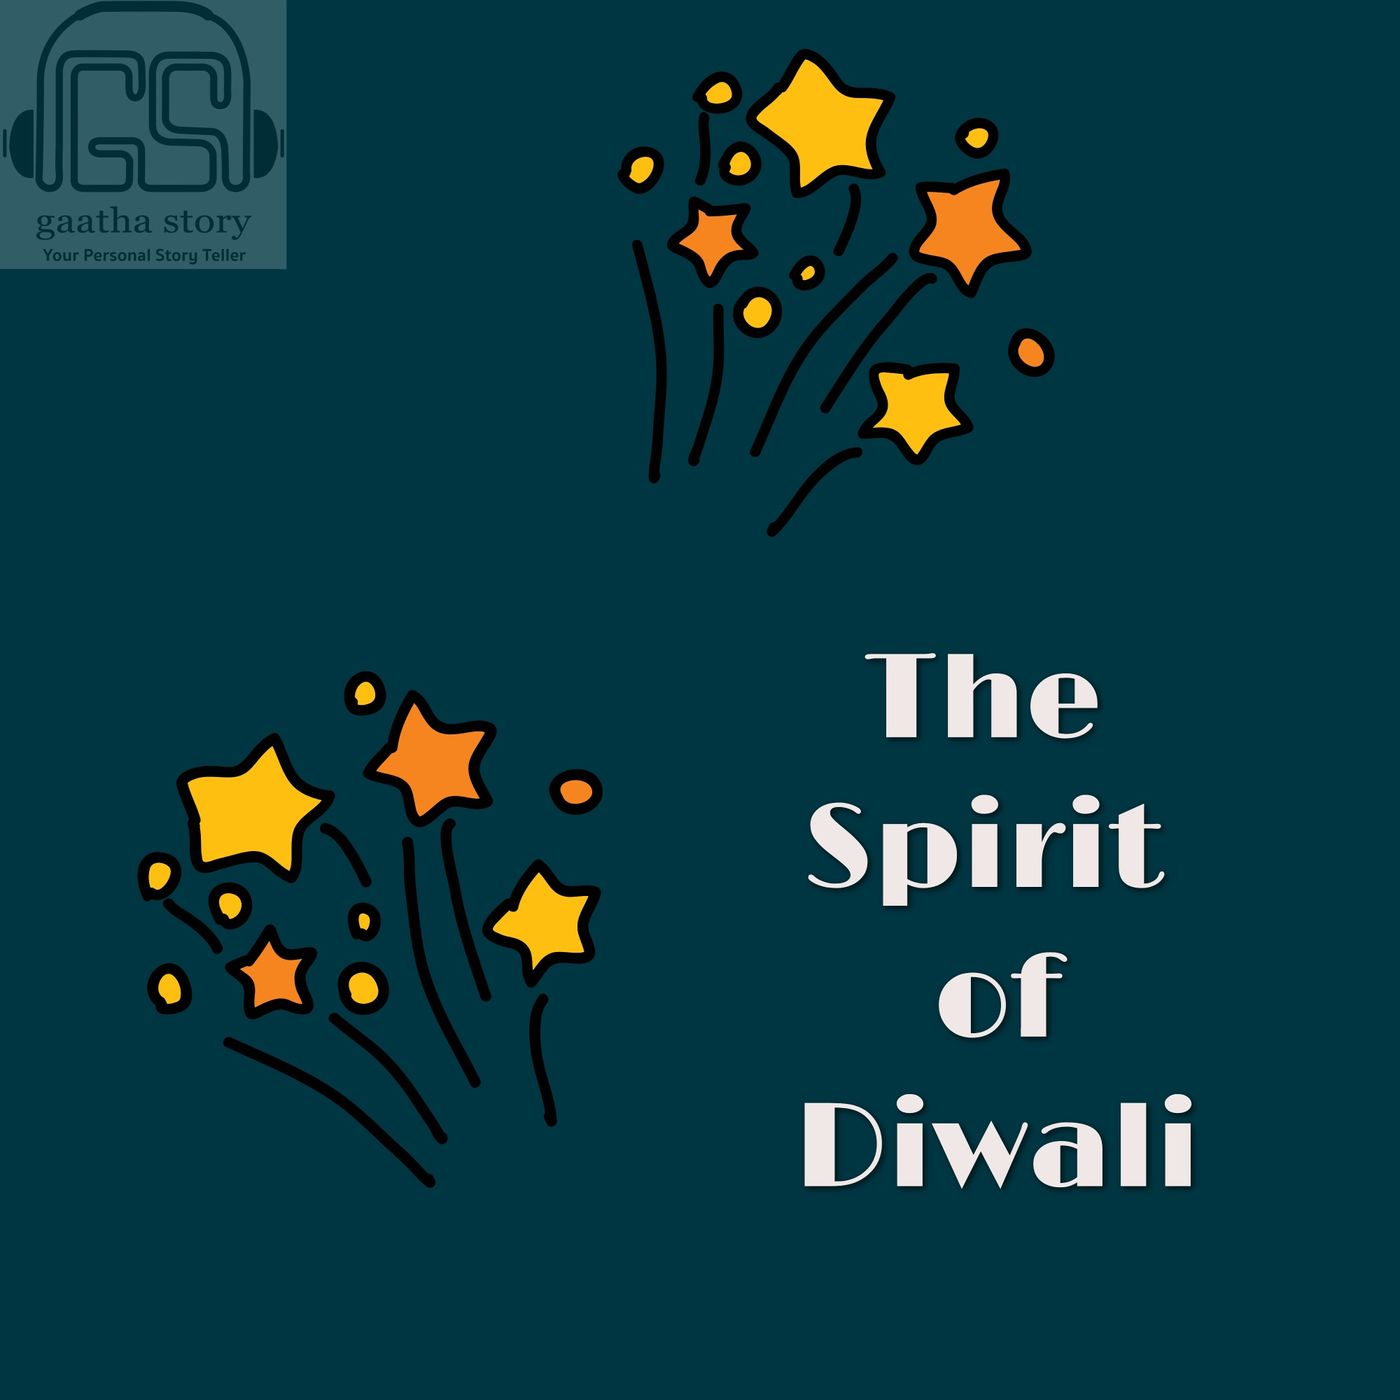 The Spirit of Diwali